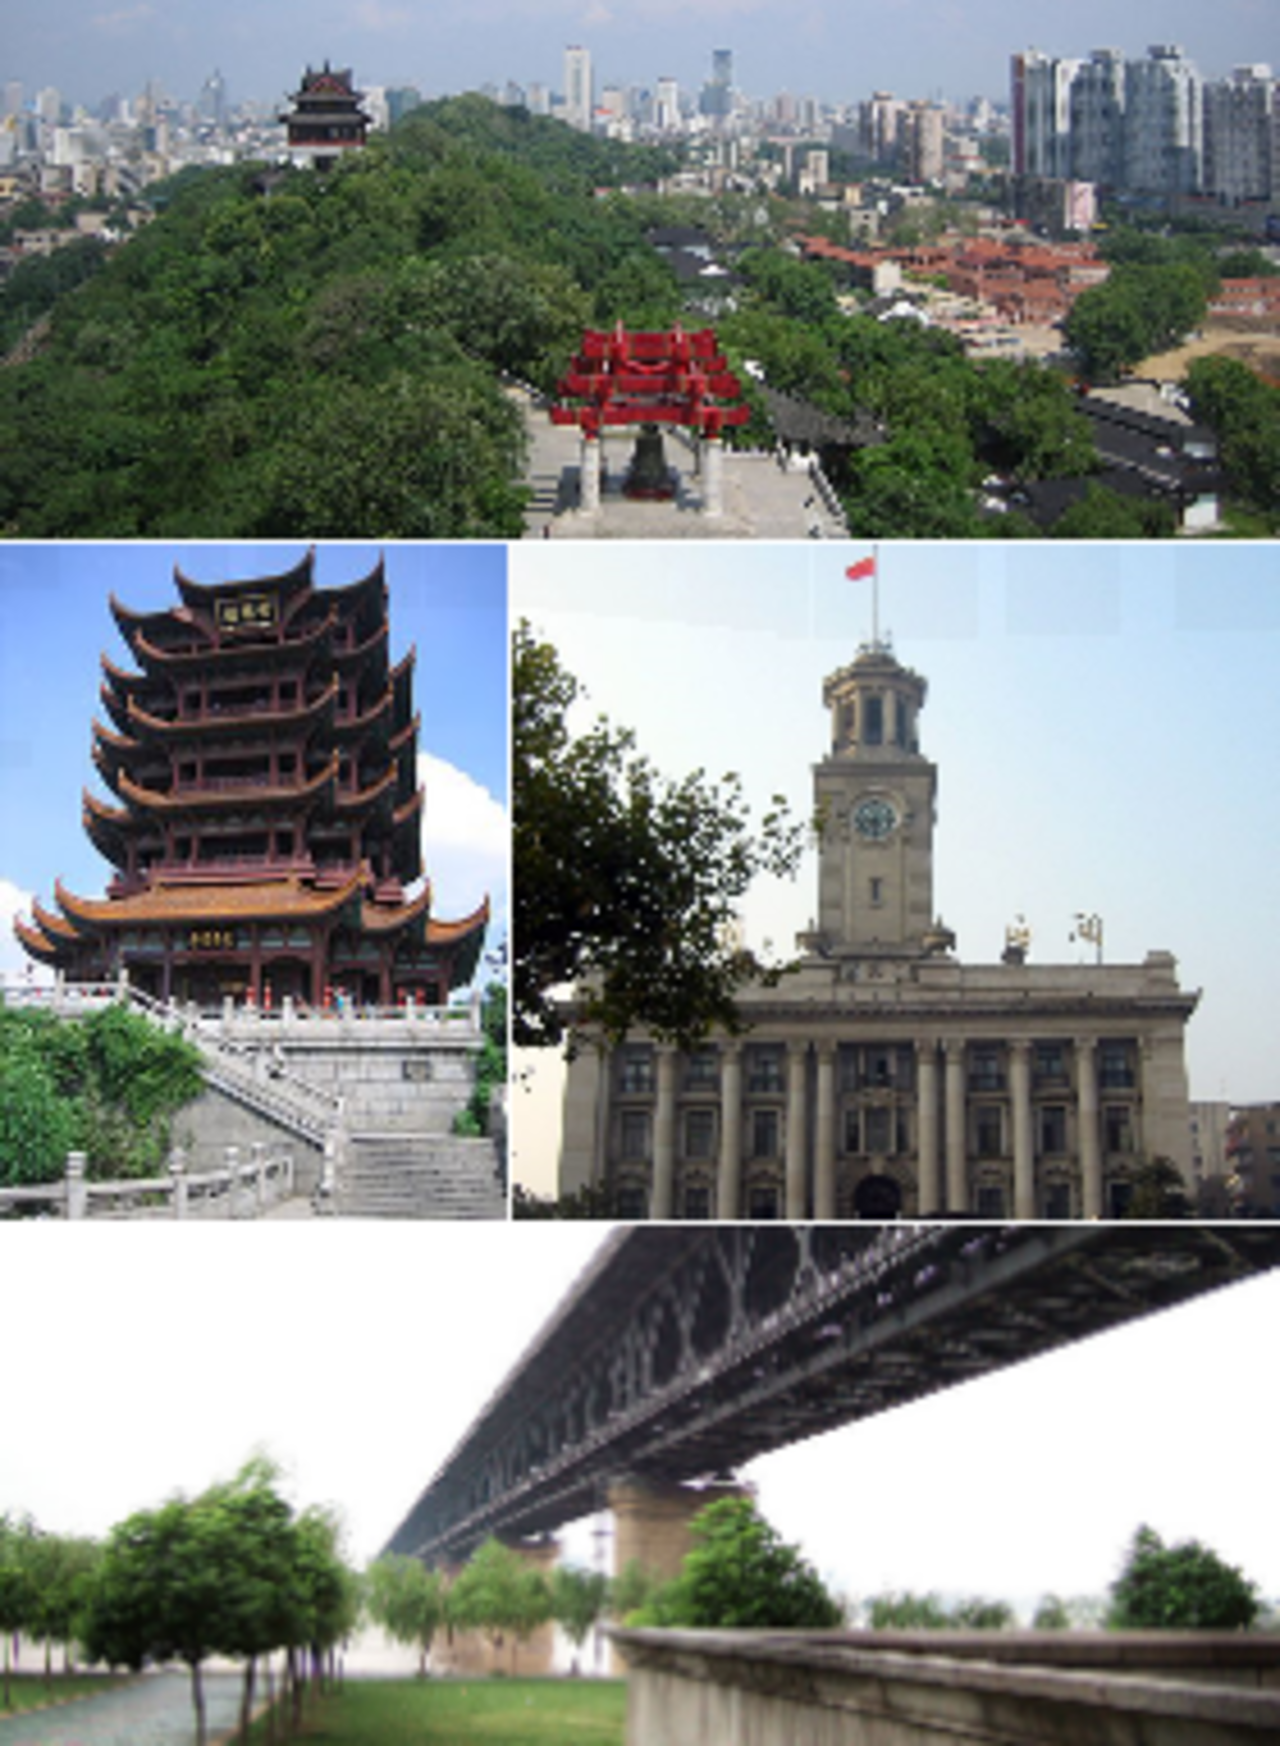 Từ trên xuống: Vũ Hán và sông Dương Tử, Hoàng Hạc lâu, tòa nhà hải quan Vũ Hán, và Vũ Hán Trường Giang đại kiều